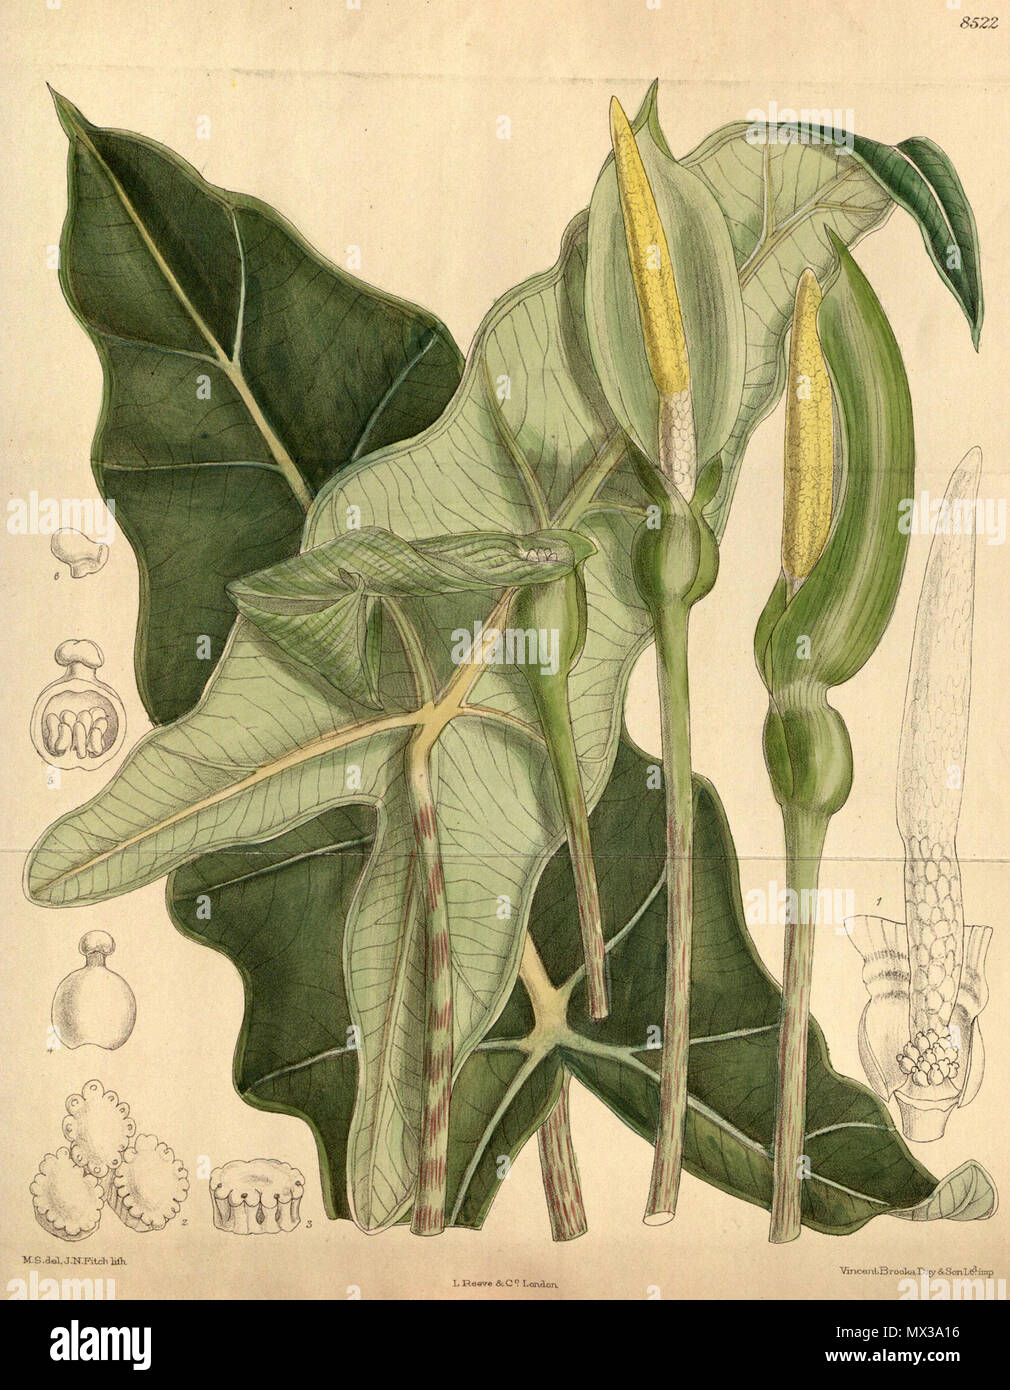 . Englisch: Alocasia micholitziana botanische Zeichnung von Curtis's Botanical Magazine v. 139. 1913. M.S. del, J. N. Fitch, Lith. 40 Alocasia micholitziana CBM Stockfoto